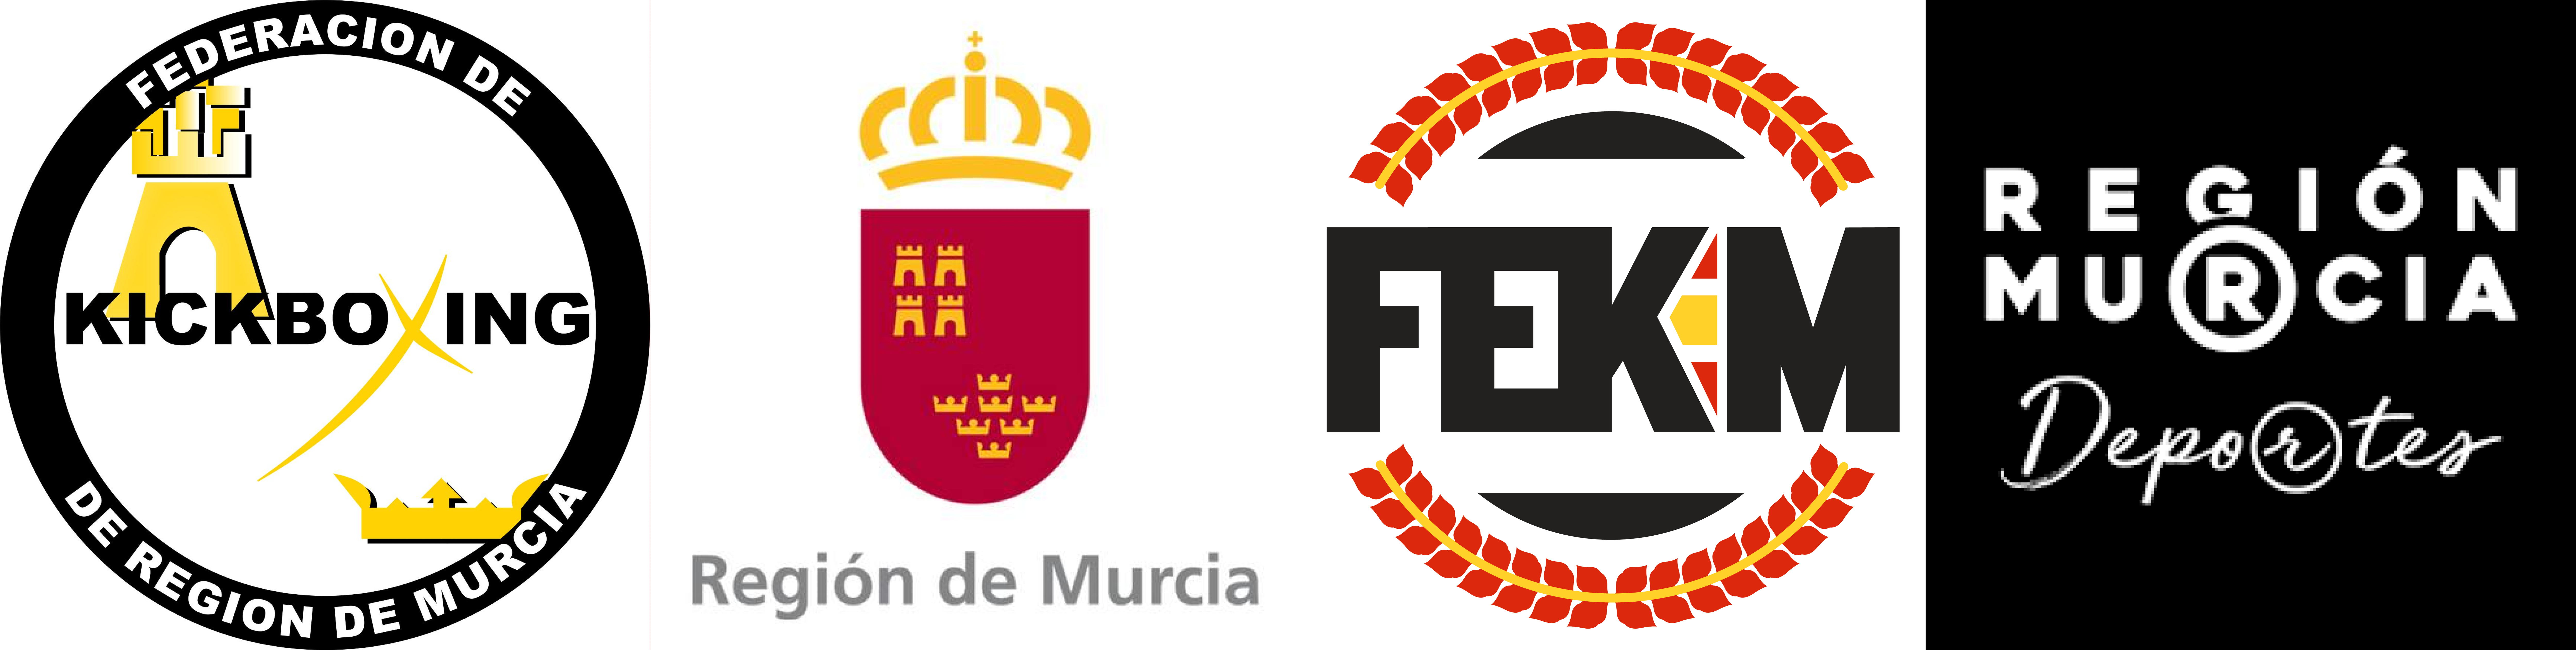 Federación de Kickboxing Región de Murcia